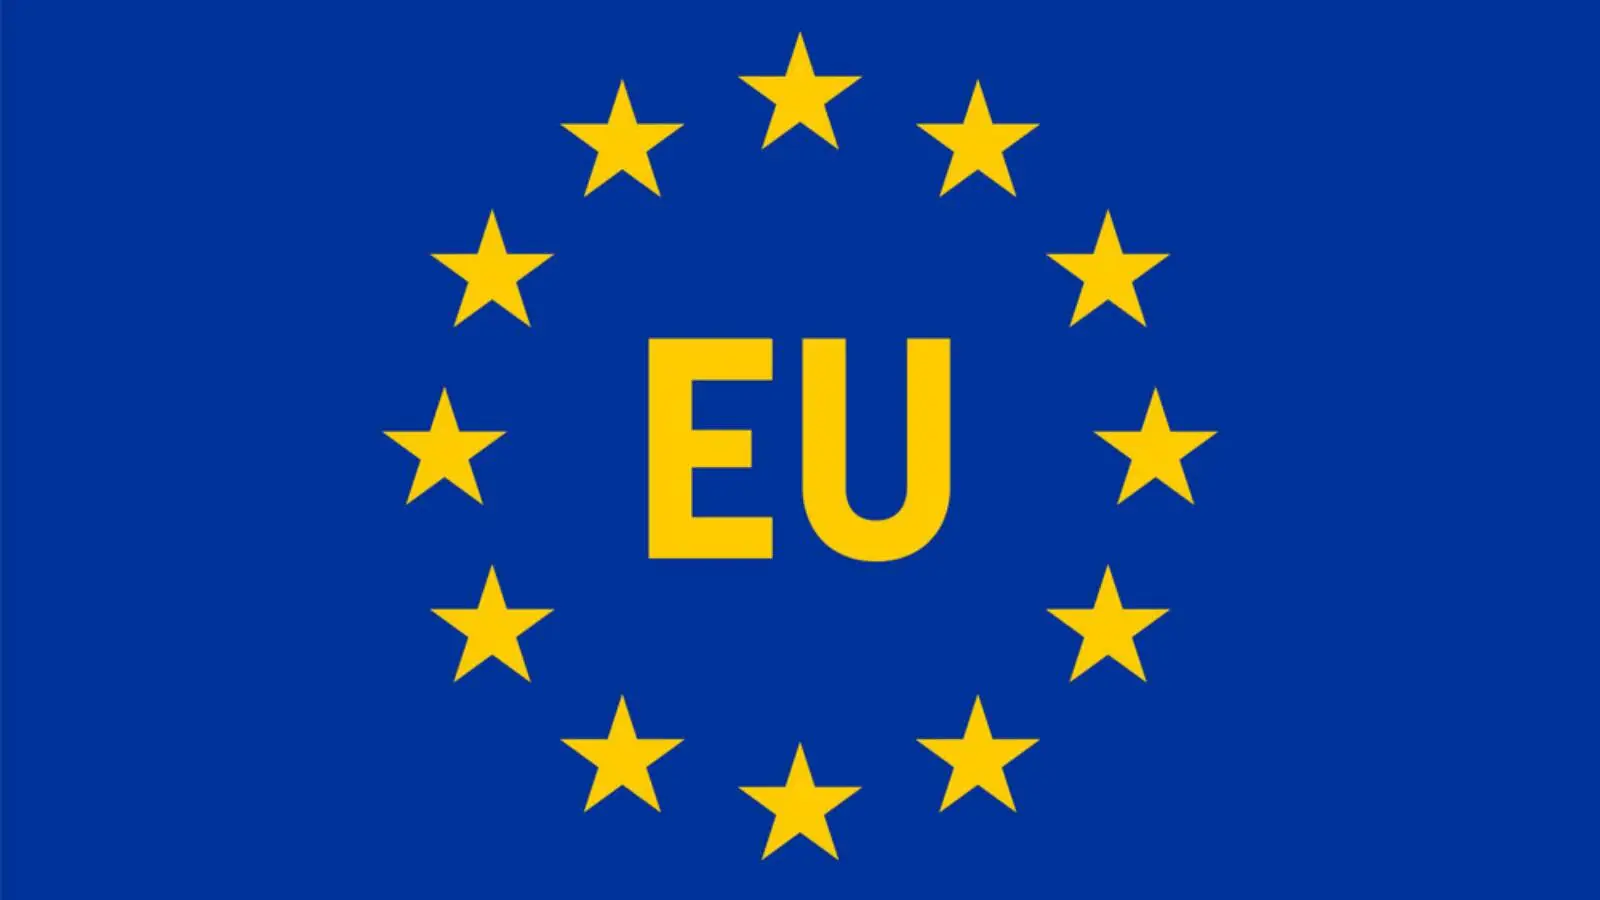 La Commission européenne annonce que 83.4% de la population de l'Union européenne est vaccinée contre le COVID